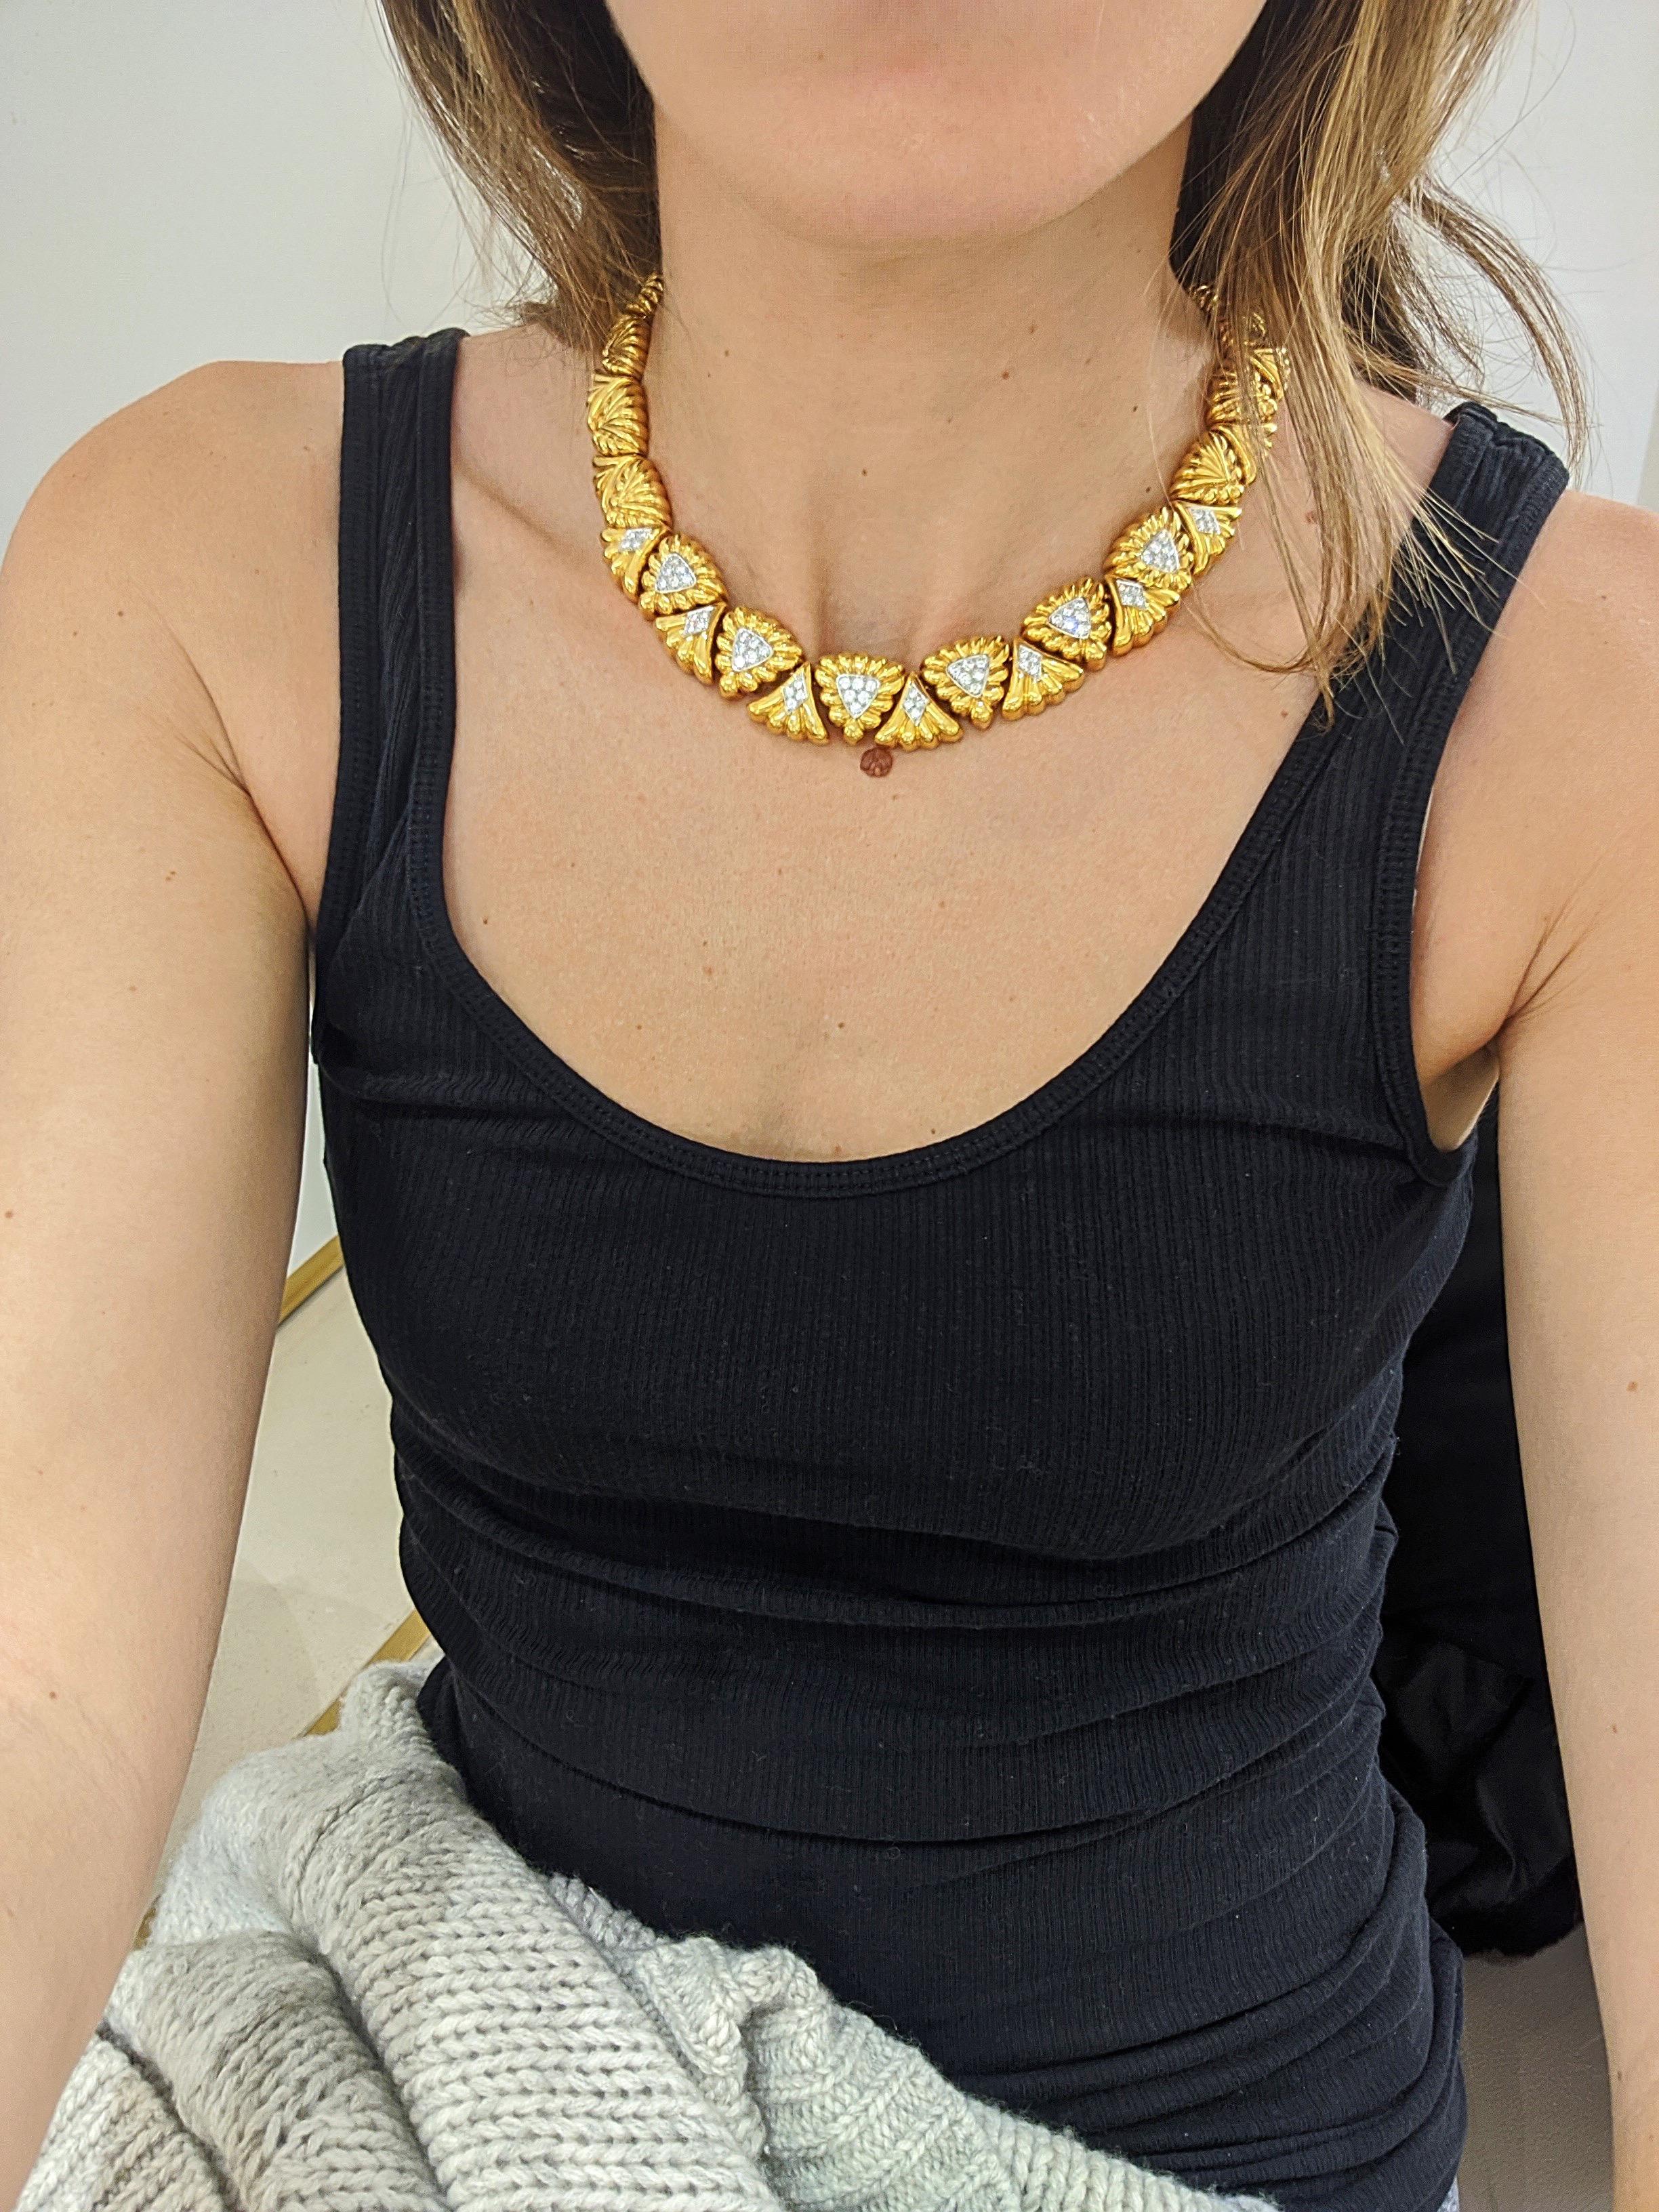 Eine wunderschöne Diamant-Halskette aus 18 Karat Gelbgold und Platin, entworfen von Tilson Gem Designs für ihre Chaavae Kollektion.
Die Halskette besteht aus insgesamt 44 dreieckigen Teilen. Die vorderen 13 Teile sind mit runden Brillanten in Platin